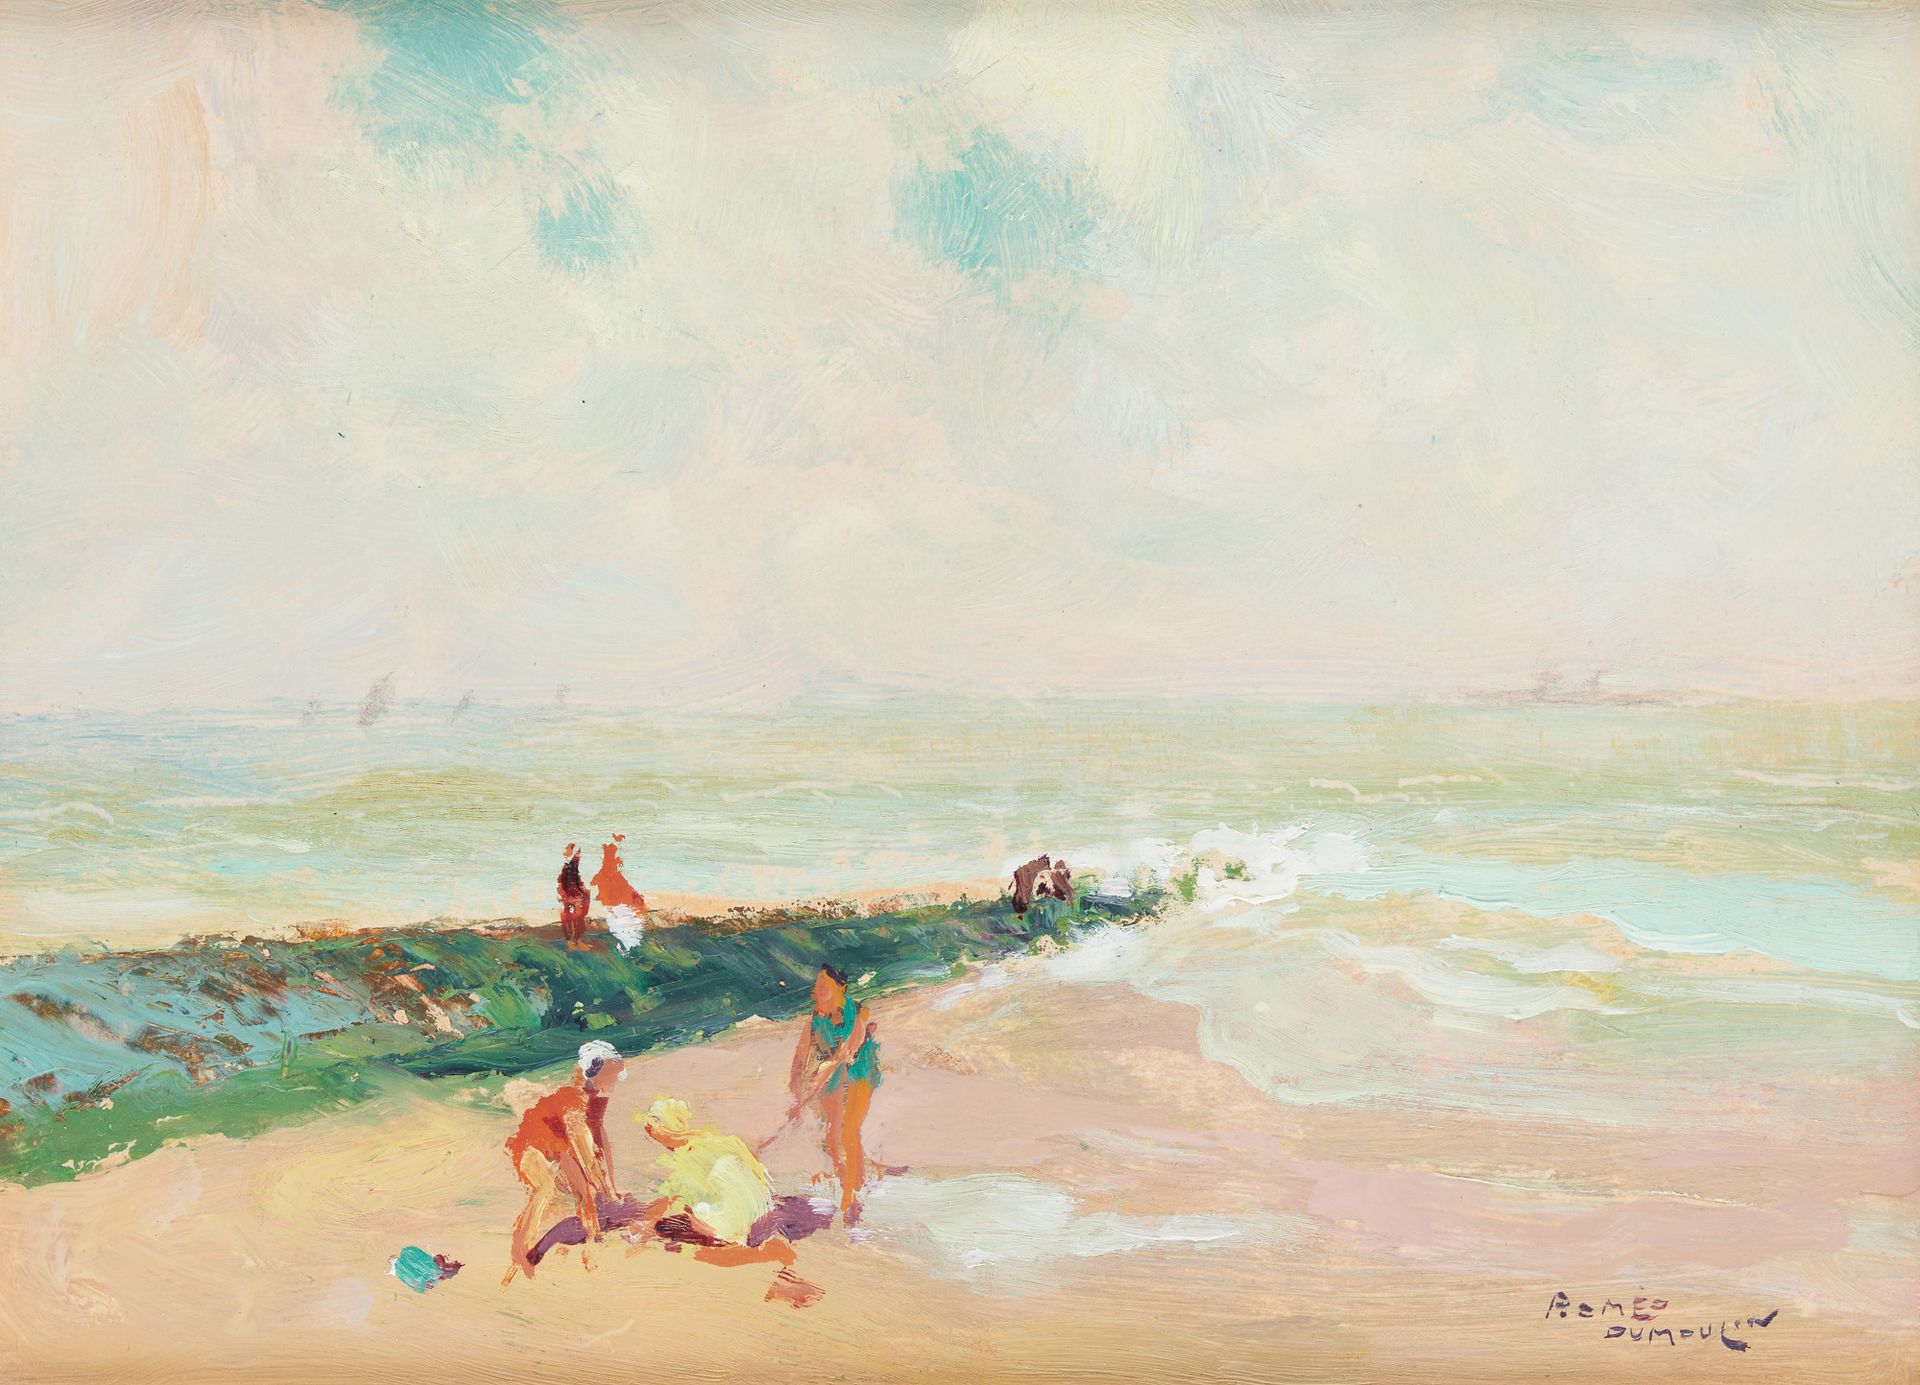 Romeo DUMOULIN École belge (1883-1944) Olio su tavola: "La spiaggia".

Firmato: &hellip;